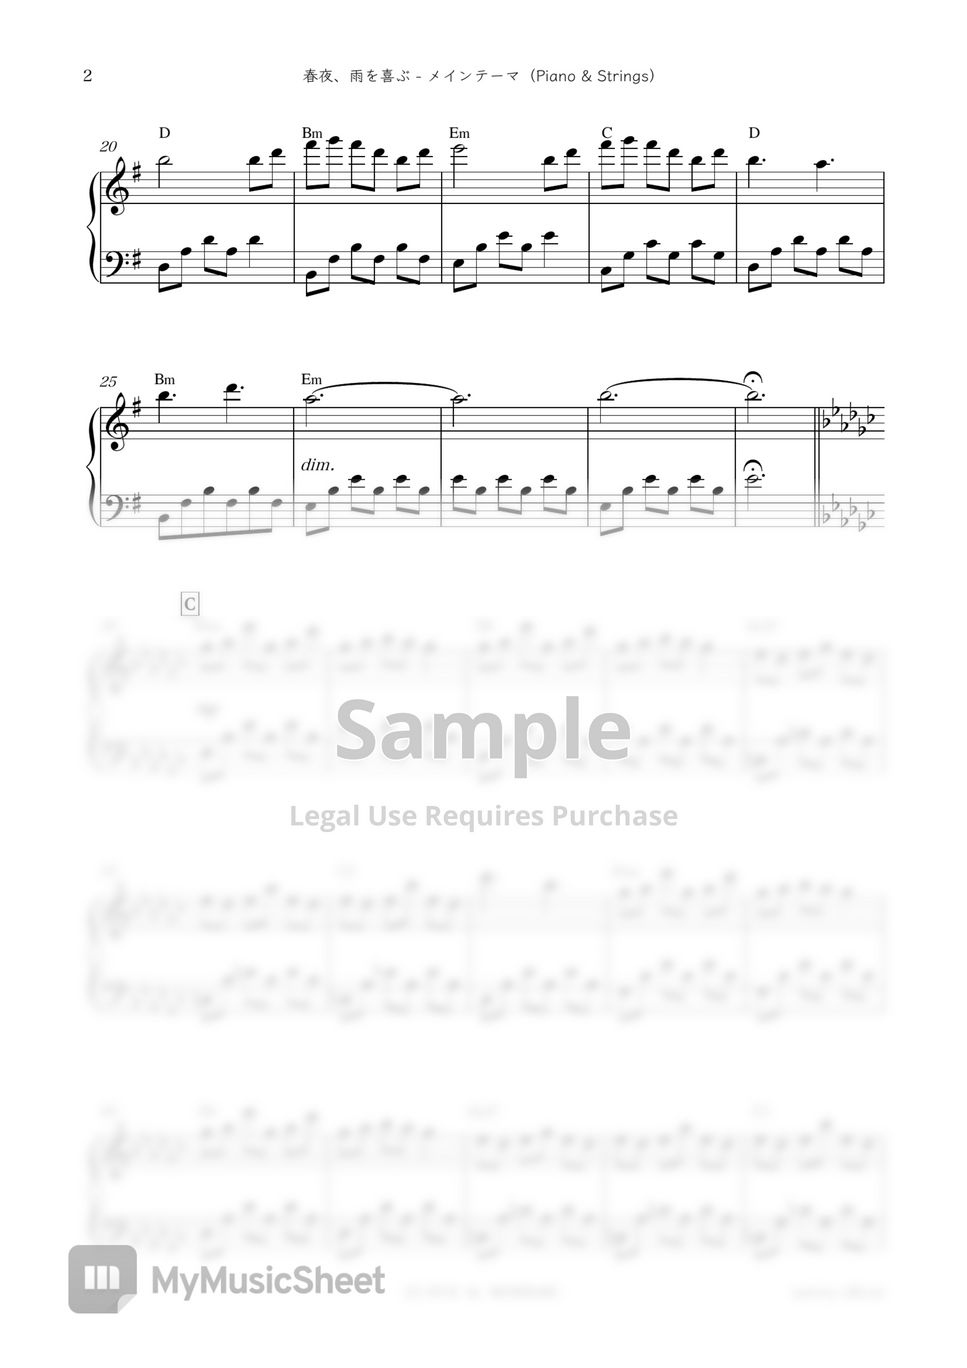 日剧《中学圣日记 (中学聖日記) 》插曲 - Shunya, Ame Wo Yorokobu - Main Thema [Piano & Strings] (春夜、雨を喜ぶ - メインテーマ [Piano & Strings]) by sammy